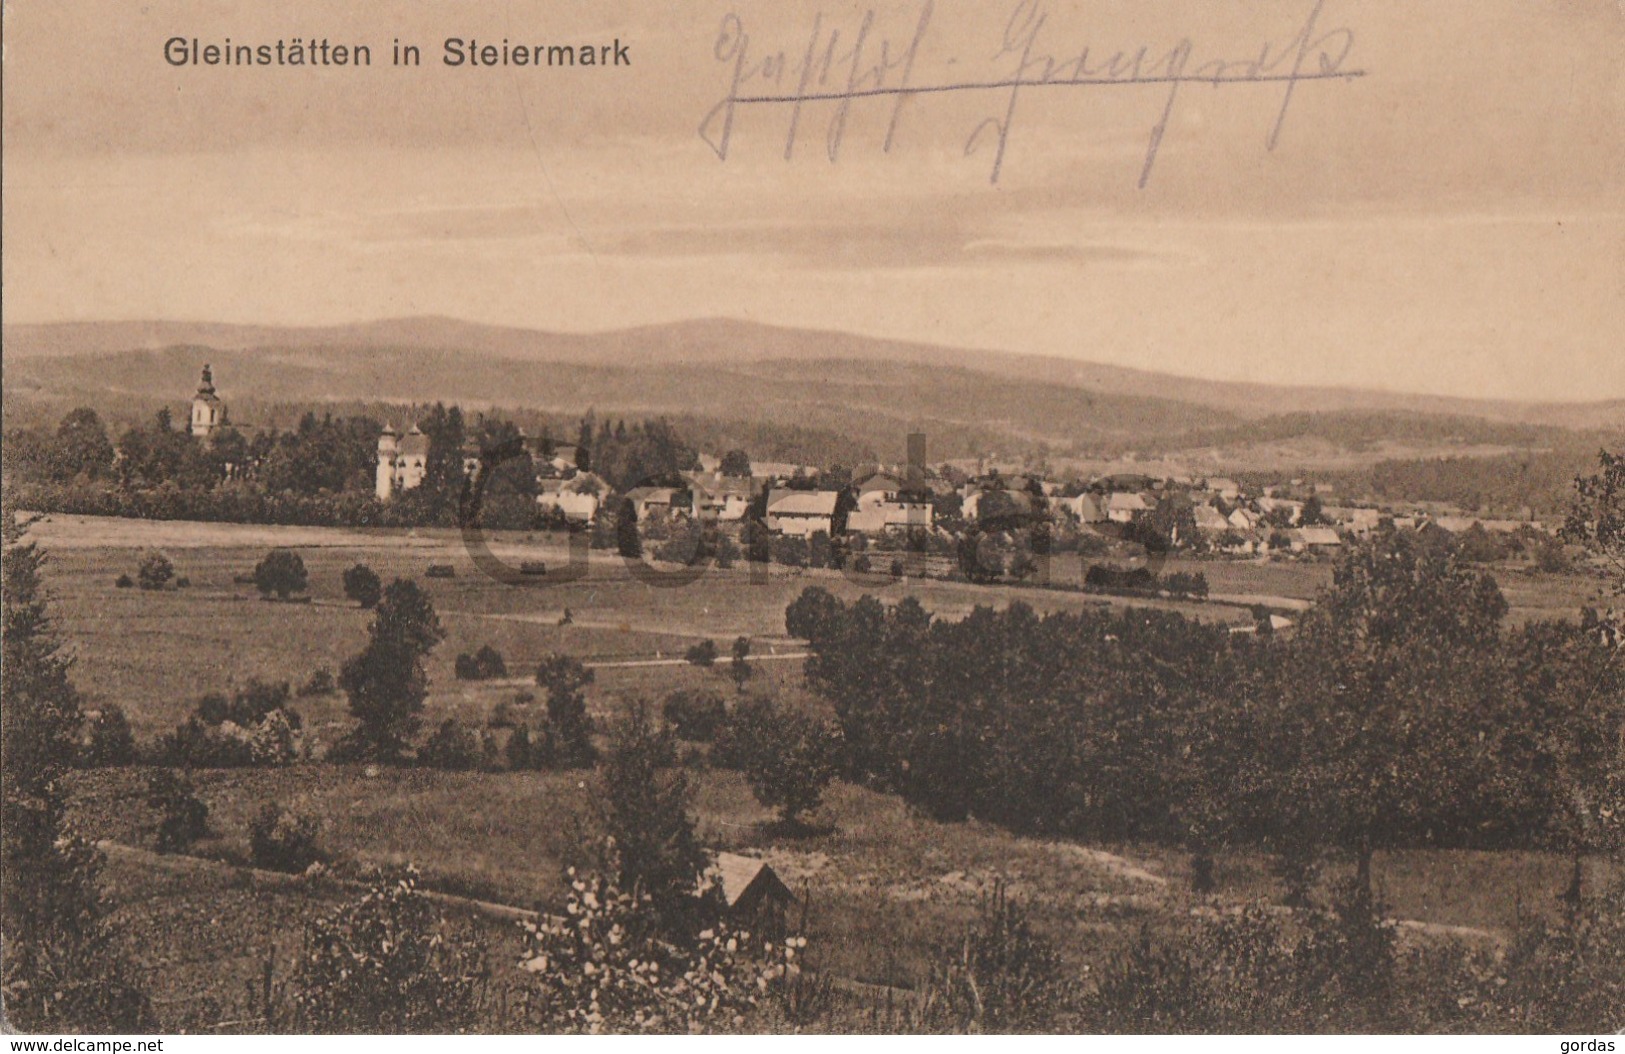 Austria - Gleinstatten In Steiermark - Leibnitz